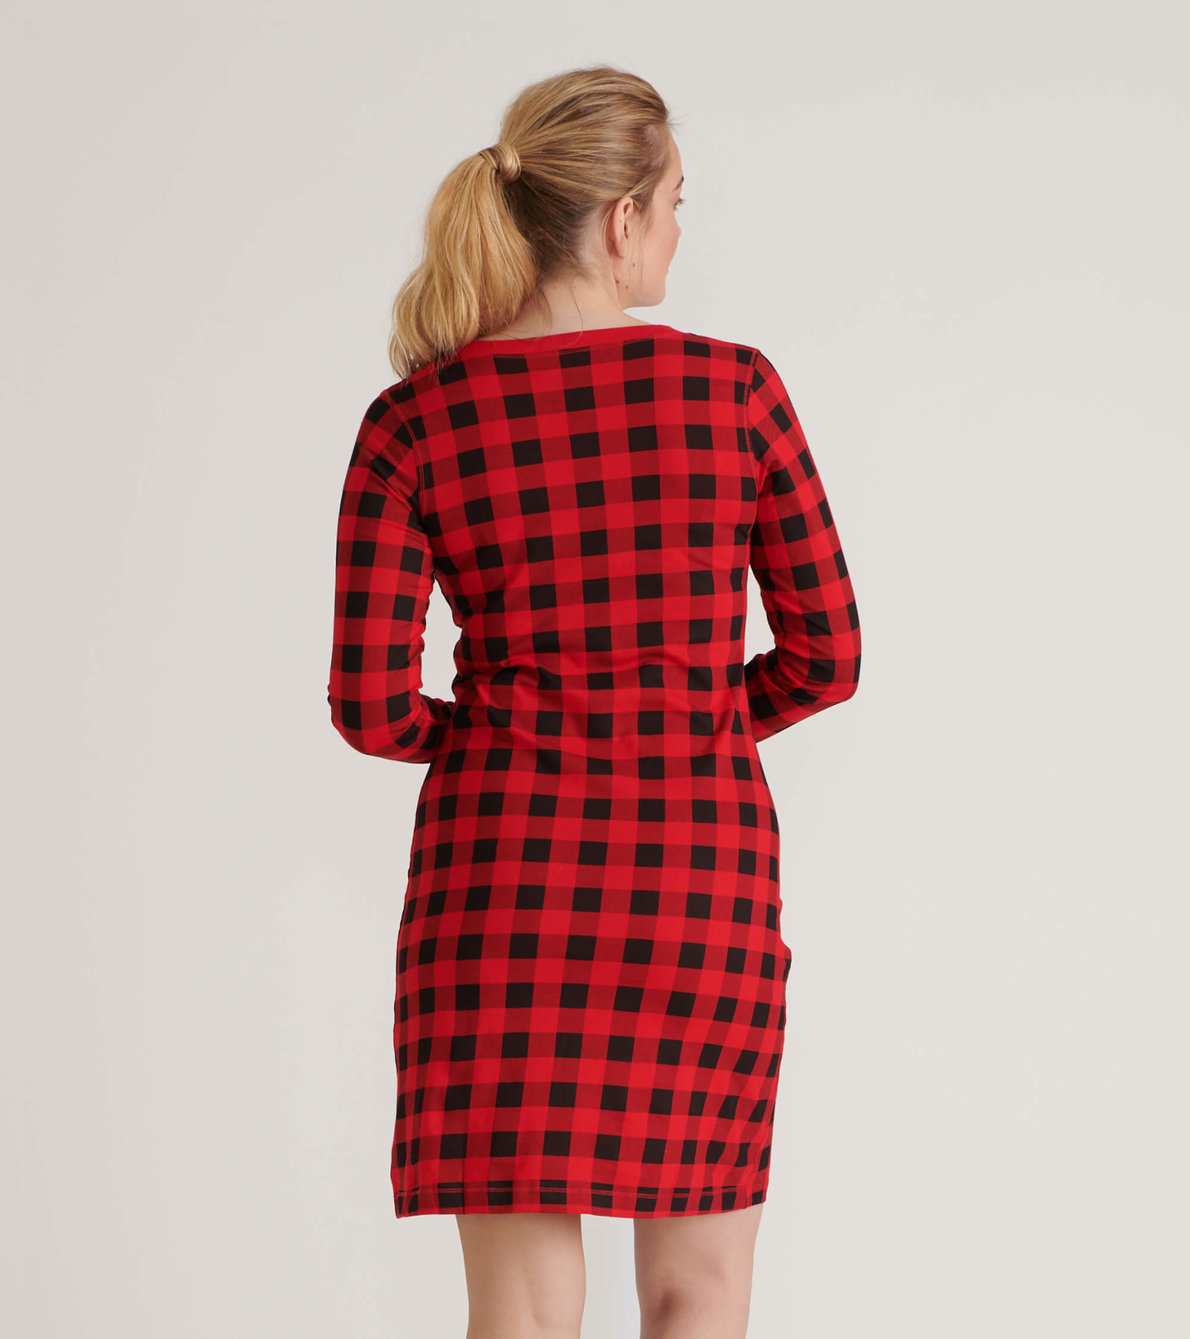 Agrandir l'image de Robe de nuit à manches longues pour femme – Tartan rouge et noir